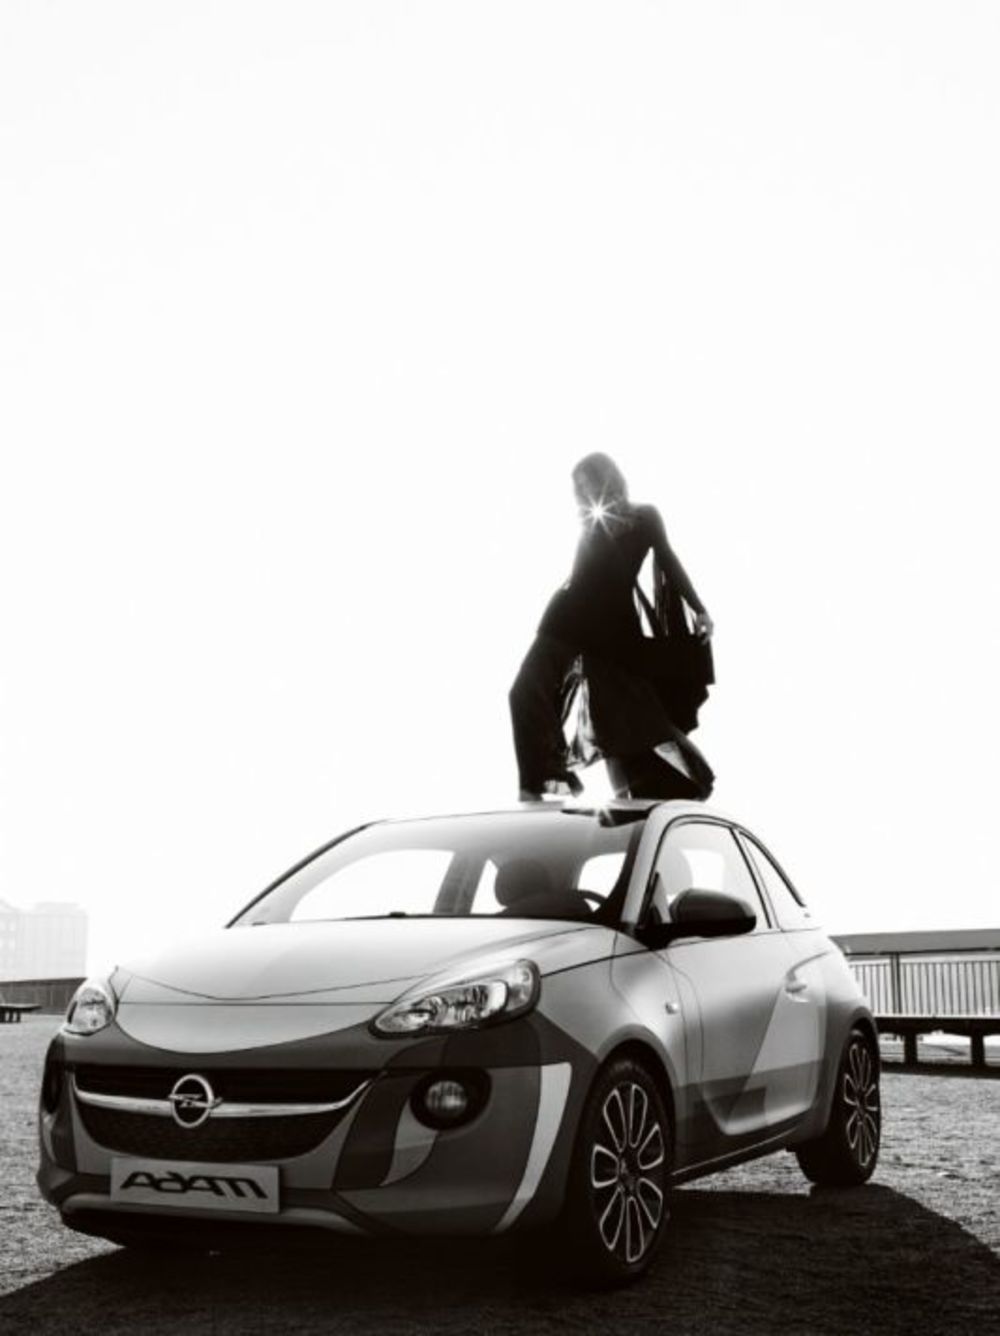 Opel ADAM će biti predstavljen na novi način, ni manje ni više nego od strane međunarodne superzvezde. Kanadski kompozitor i rok pevač nije samo izvanredan muzičar, već i ugledan fotograf. Ovaj umetnik u njegovom studiju u Berlinu fotografisao je šampiona indi